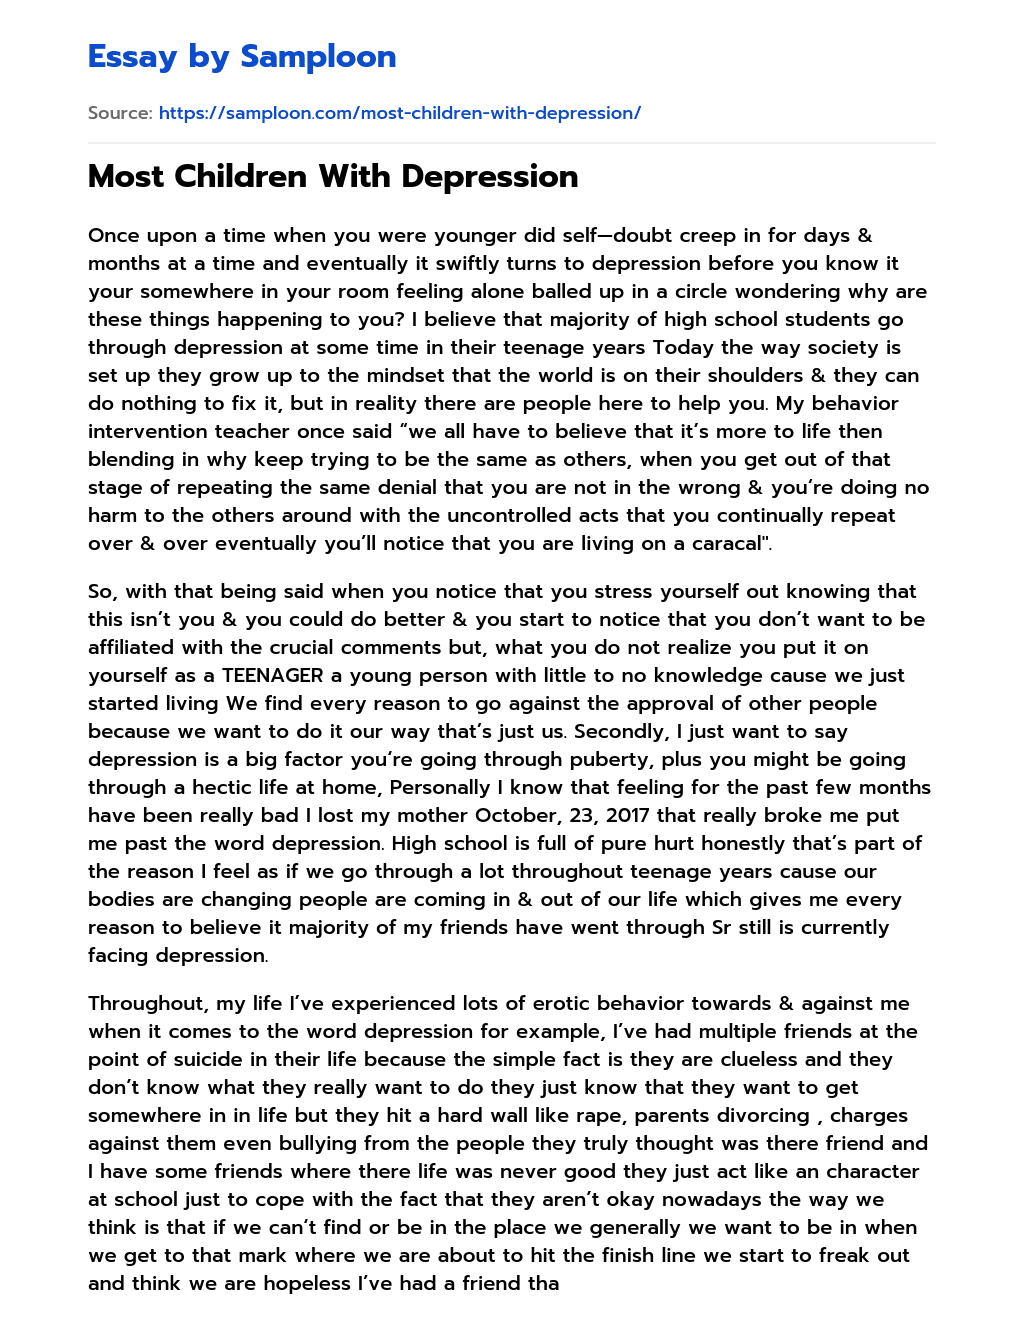 Most Children With Depression essay